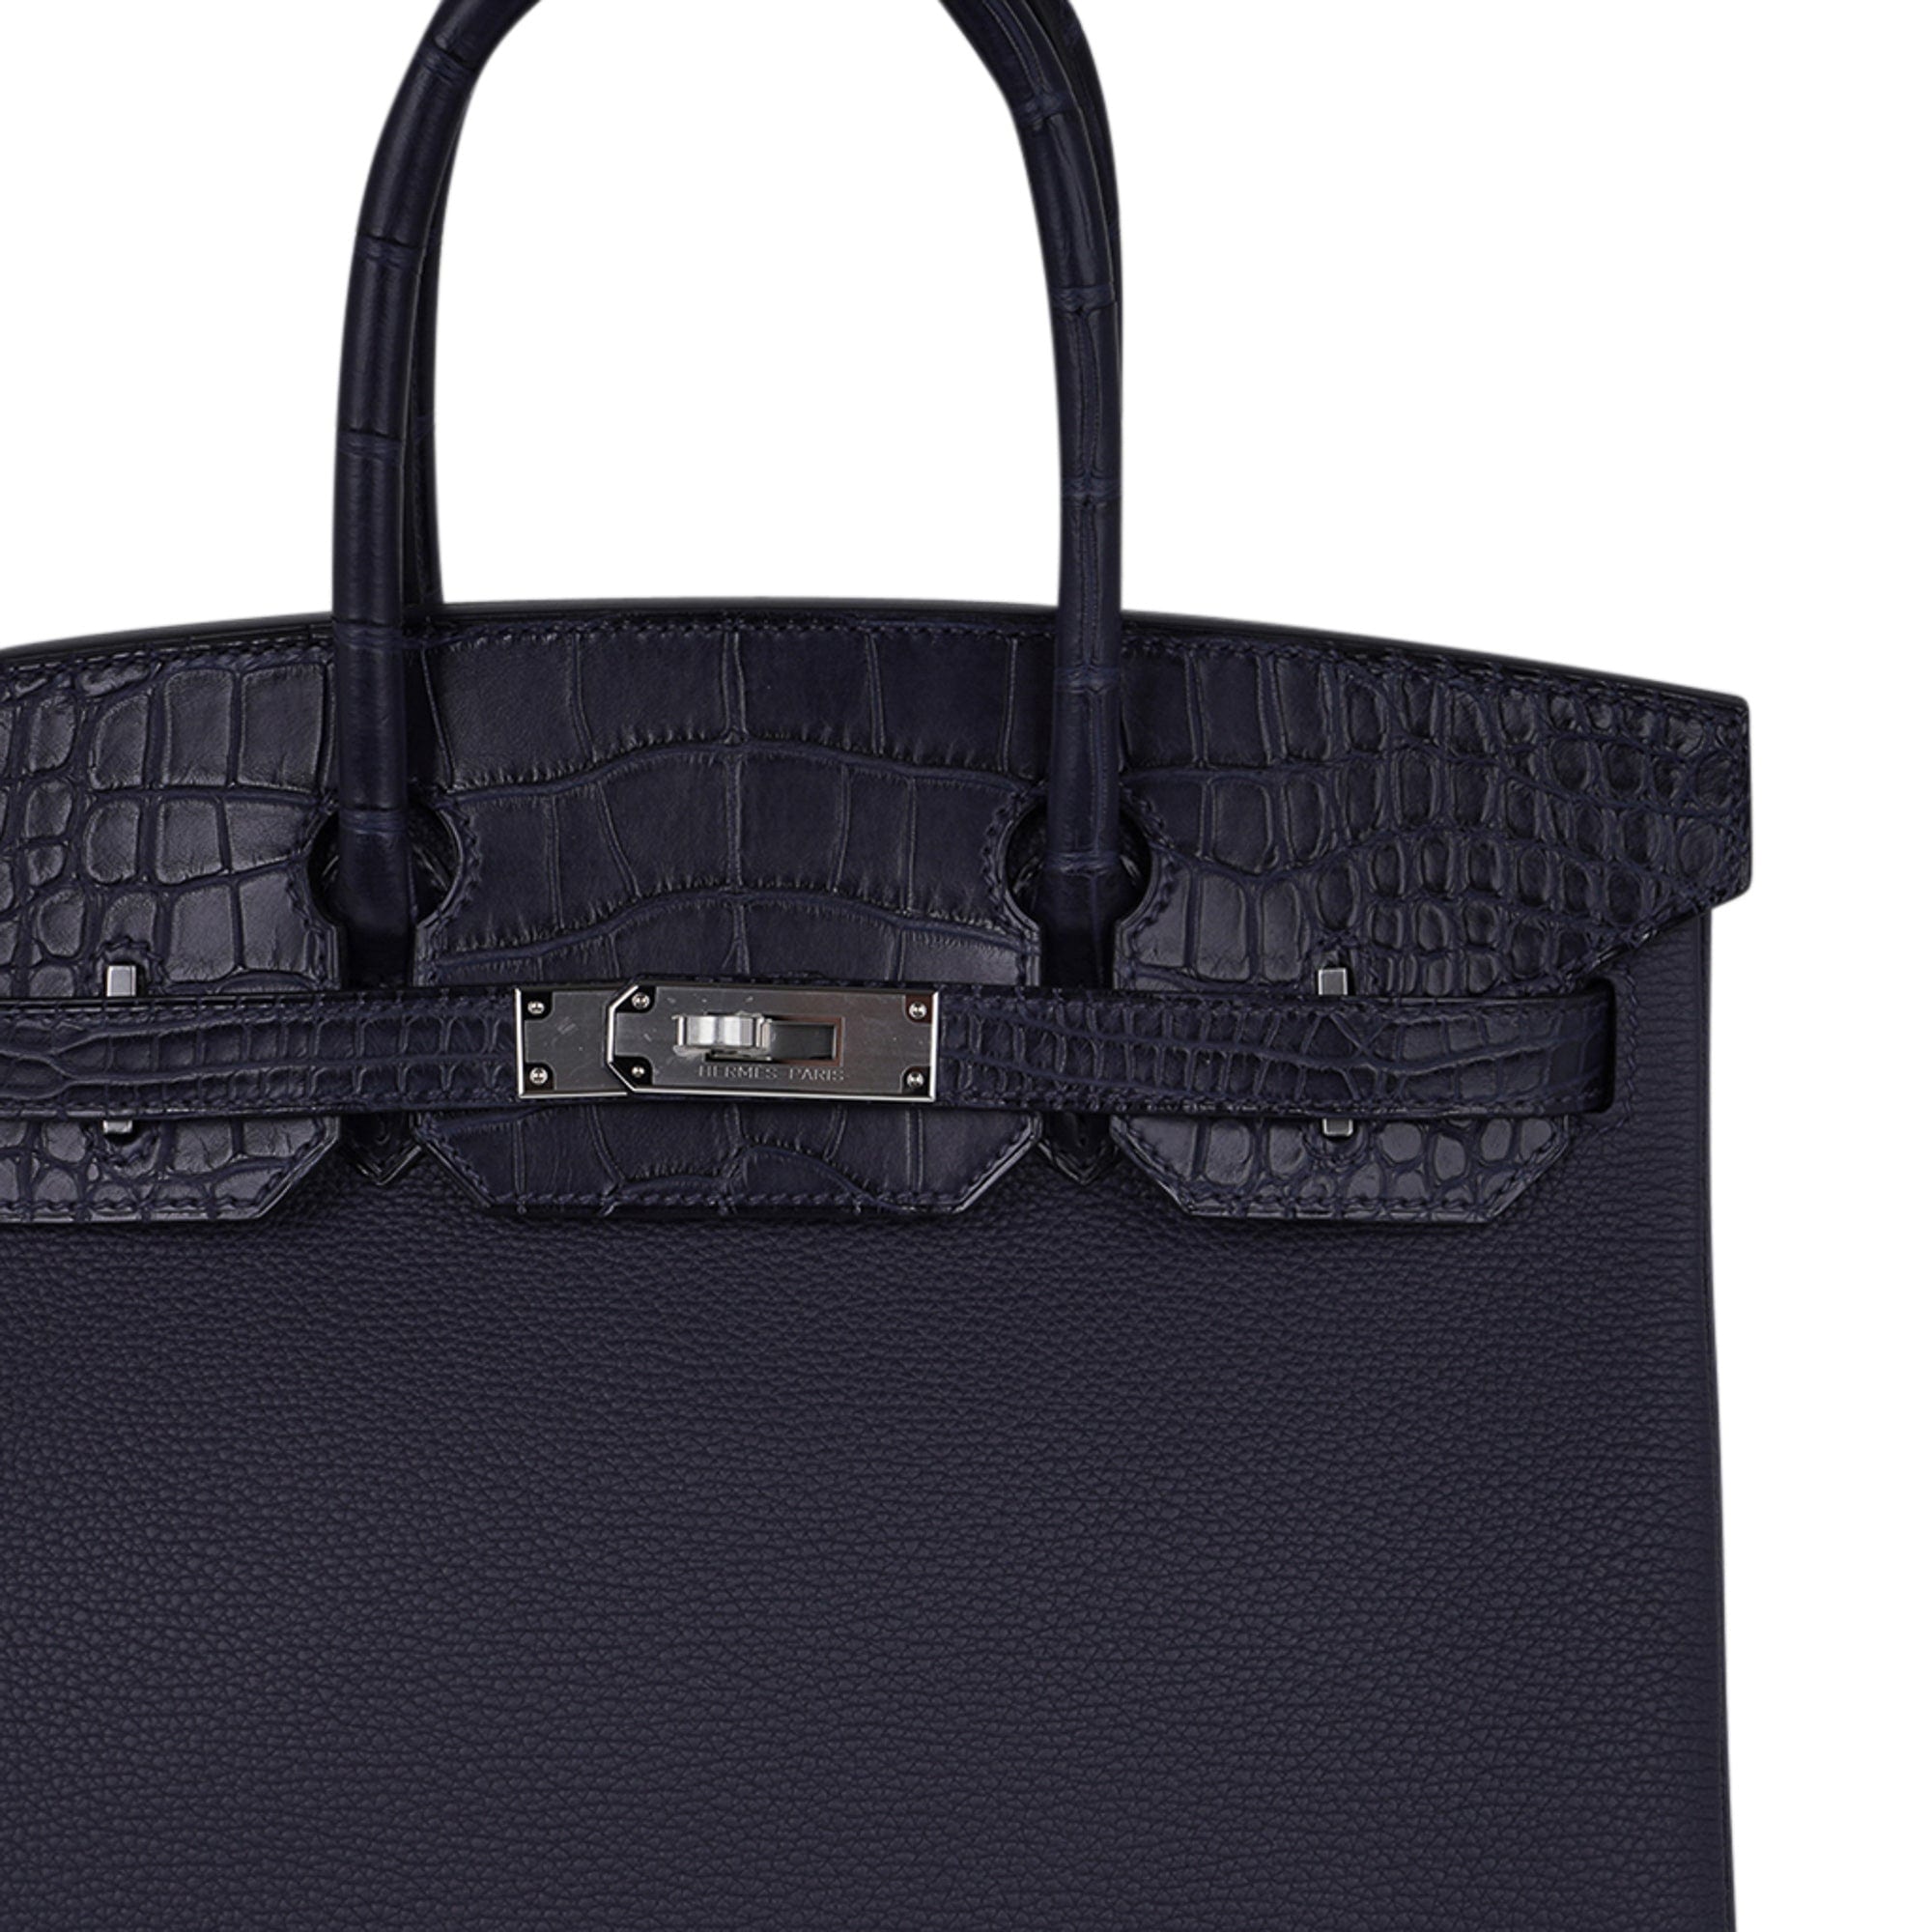 Hermes Birkin 25 Black Matte Alligator Bag Gold Hardware – Mightychic